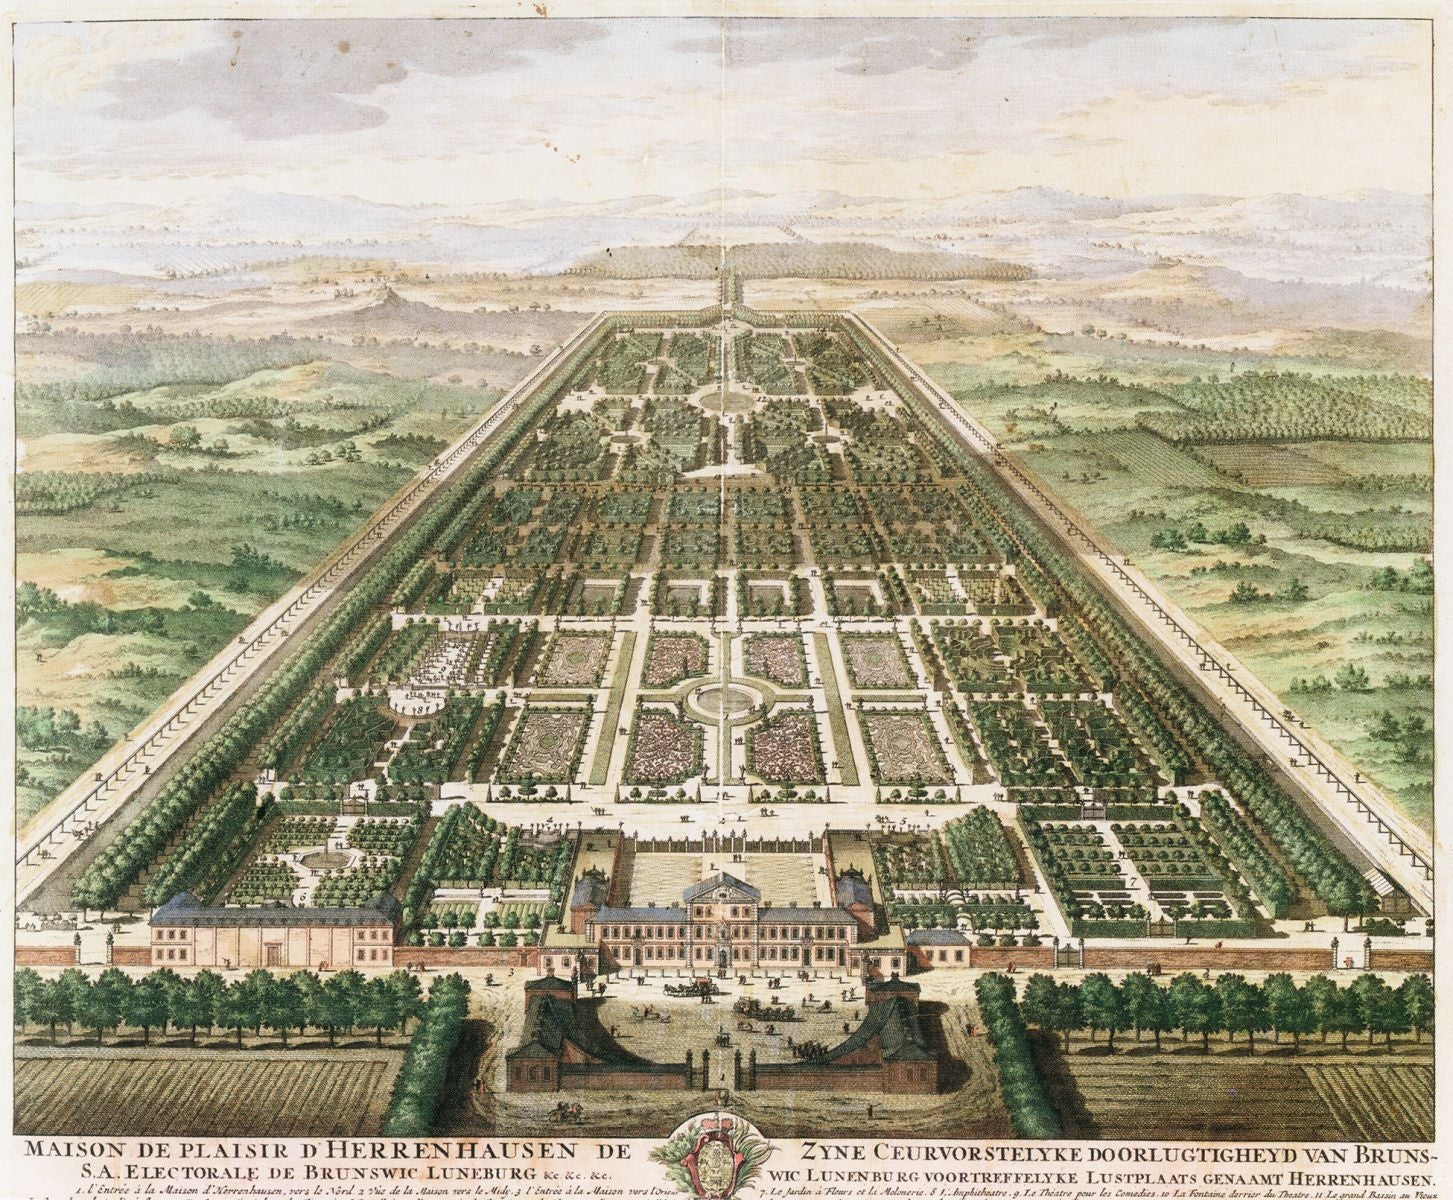 The gardens at Herrenhausen, c.1708. Image: Wikimedia Commons